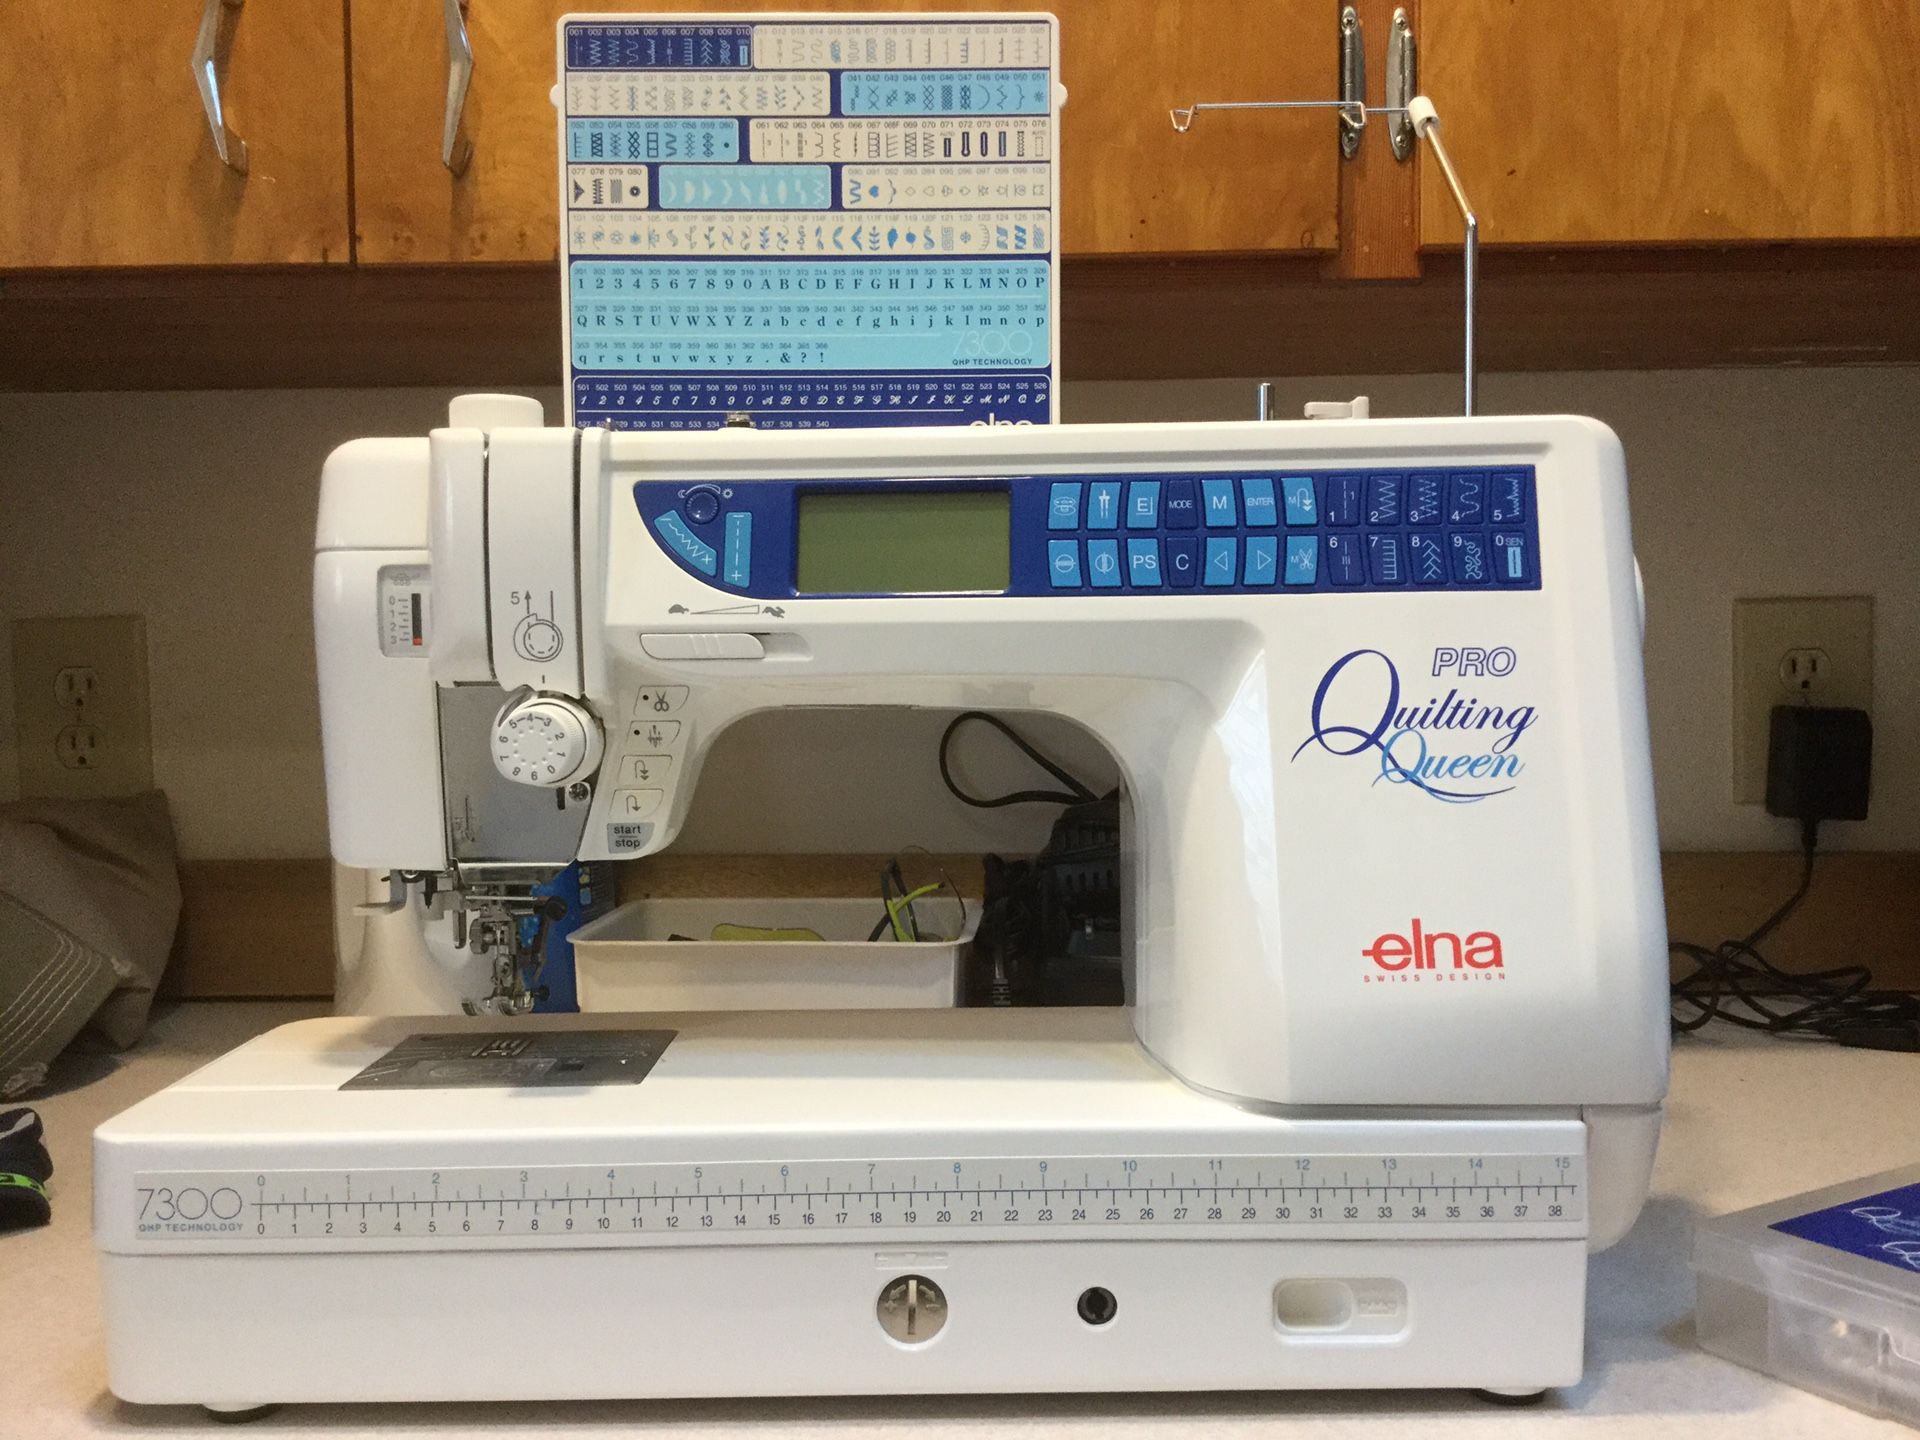 Elna Quilting Queen Pro 7300 sewing machine